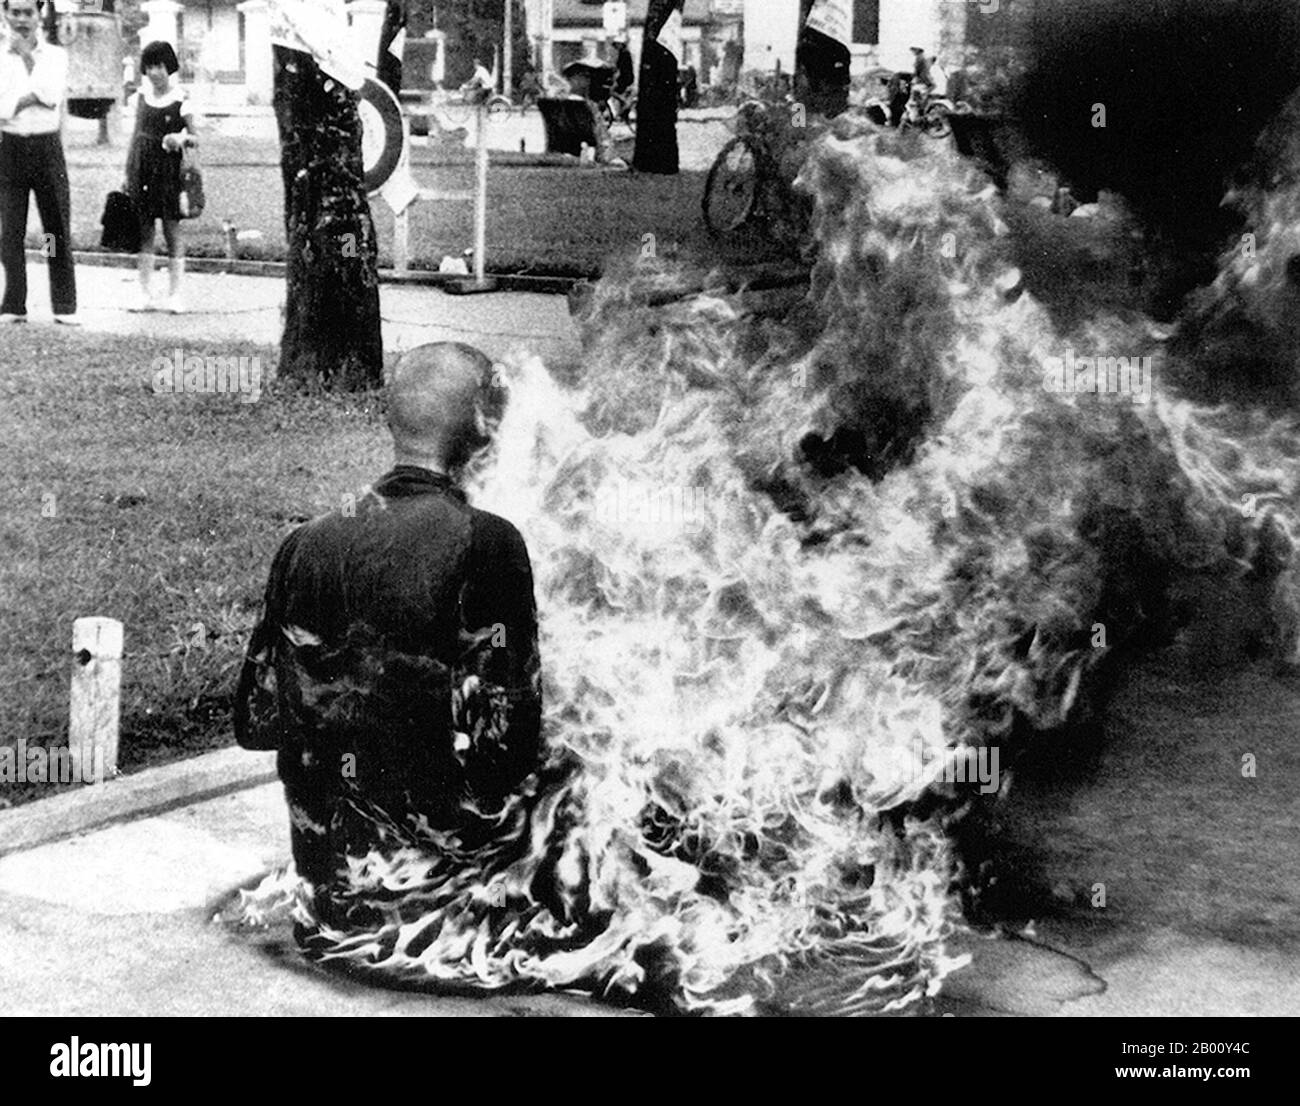 Vietnam: Un monaco buddista si brucia a morte, Saigon, 1963. I monaci buddisti, specialmente da Hue nel Vietnam centrale, ma anche da altre località, tra cui Saigon, praticavano l'auto-immolazione per protestare contro la divisione del Vietnam nel nord e nel sud, la natura autoritaria di regimi consecutivi del Vietnam del Sud, e il coinvolgimento del Vietnam del Sud con gli Stati Uniti d'America. Foto Stock